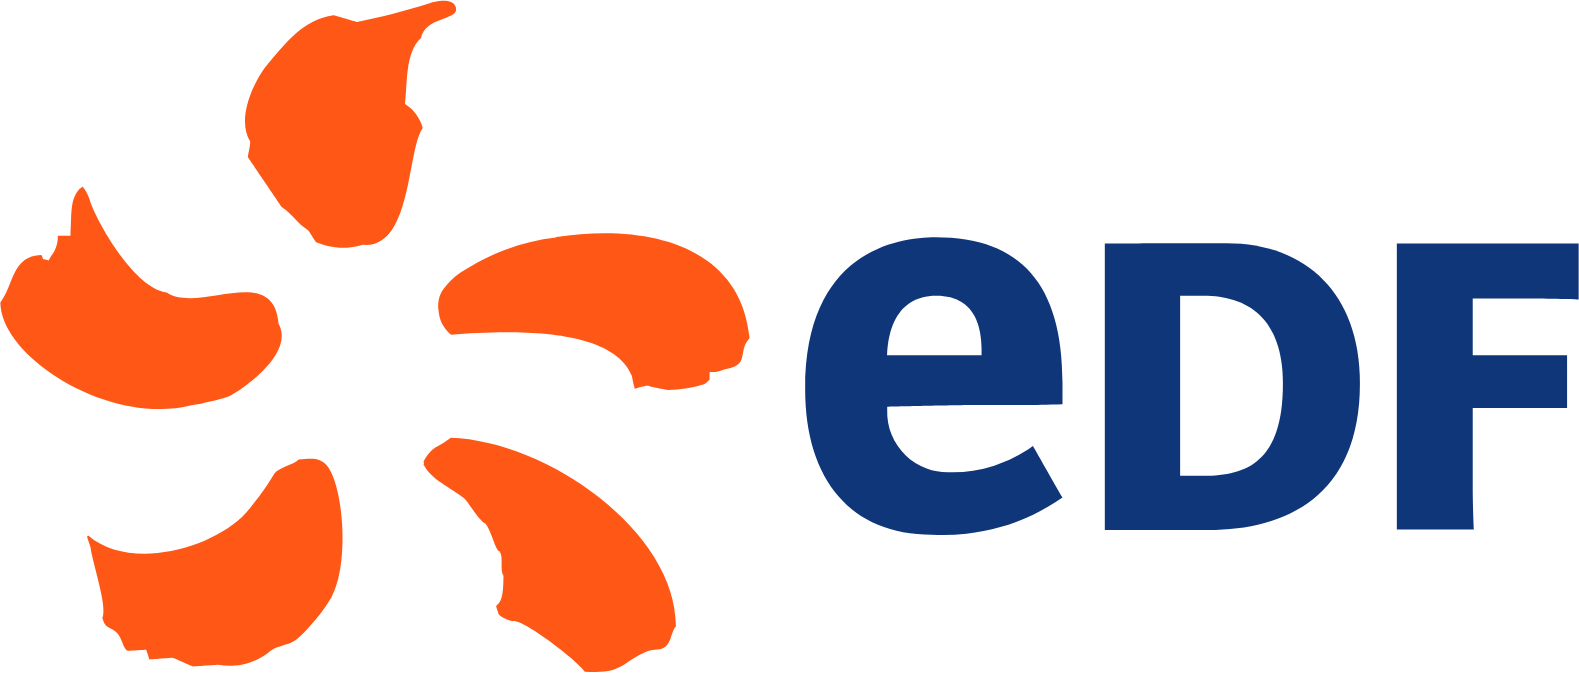 EDF (Electricité de France) logo large (transparent PNG)